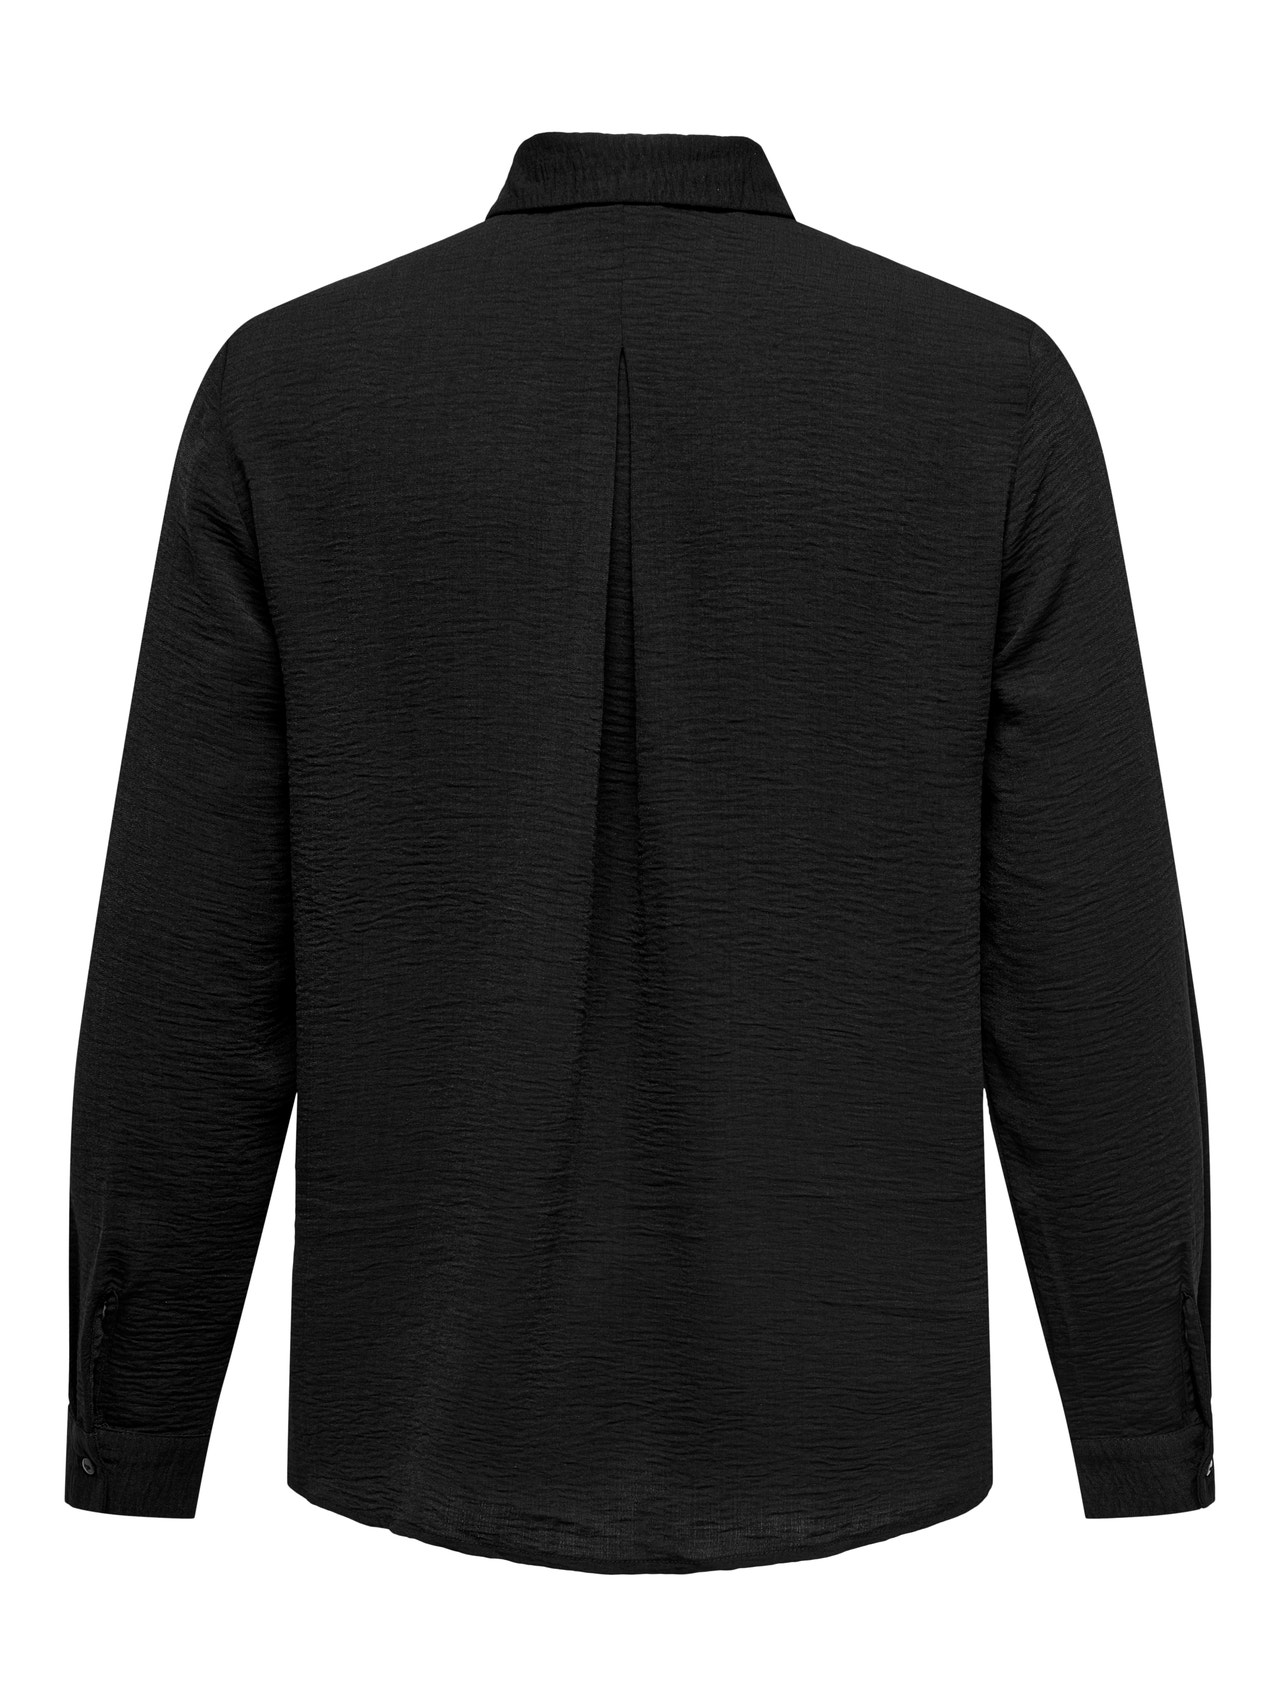 ONLY Chemises Regular Fit Col chemise -Black - 15335765